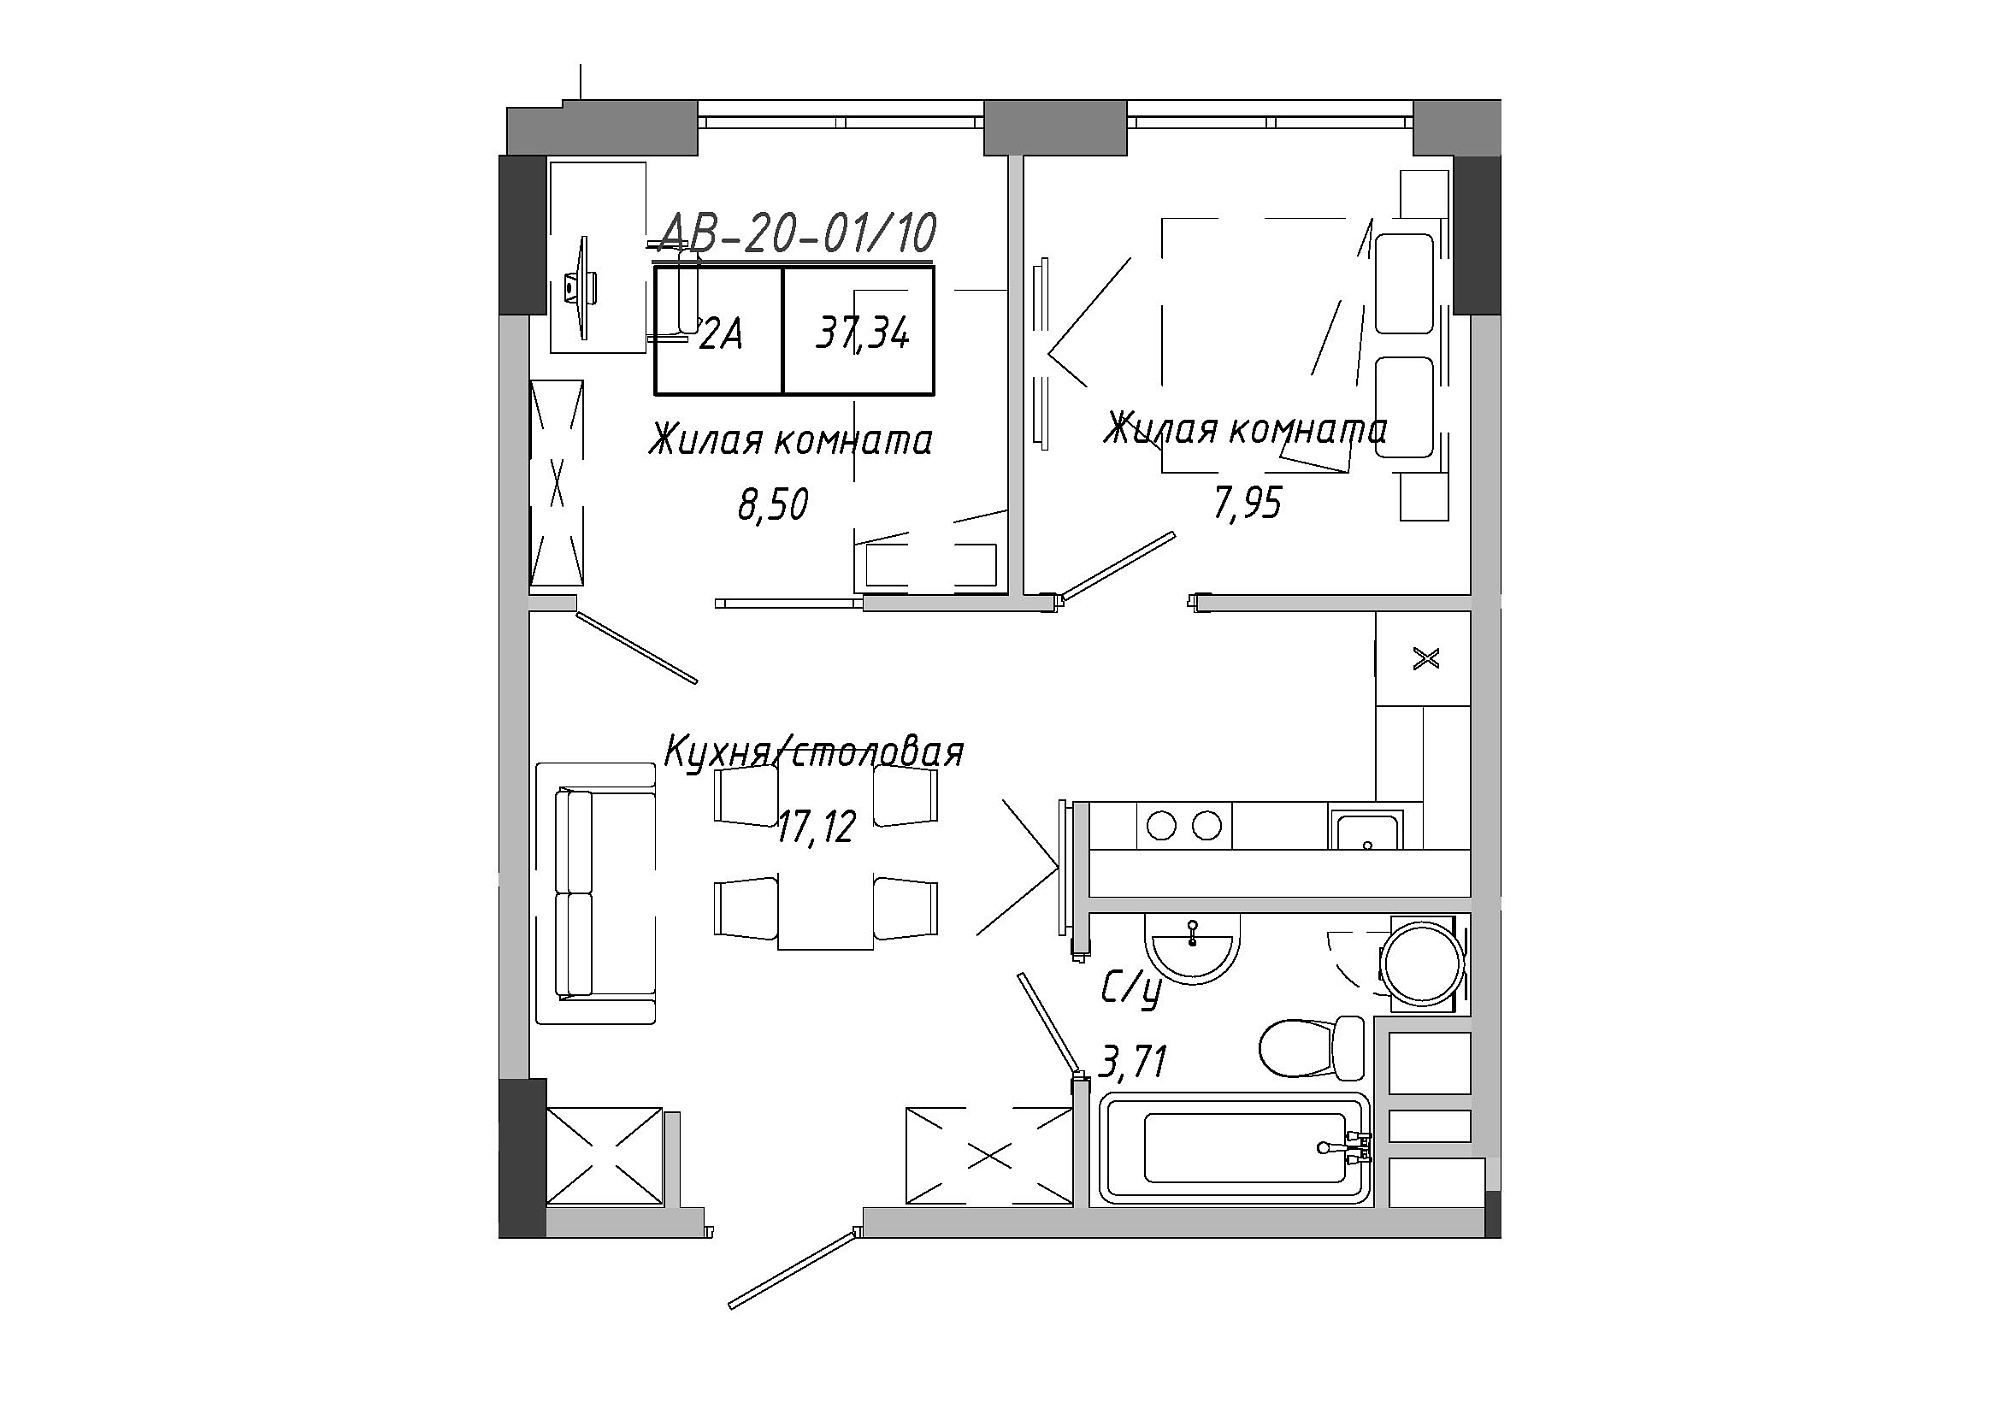 Планування 2-к квартира площею 37.34м2, AB-20-01/00010.